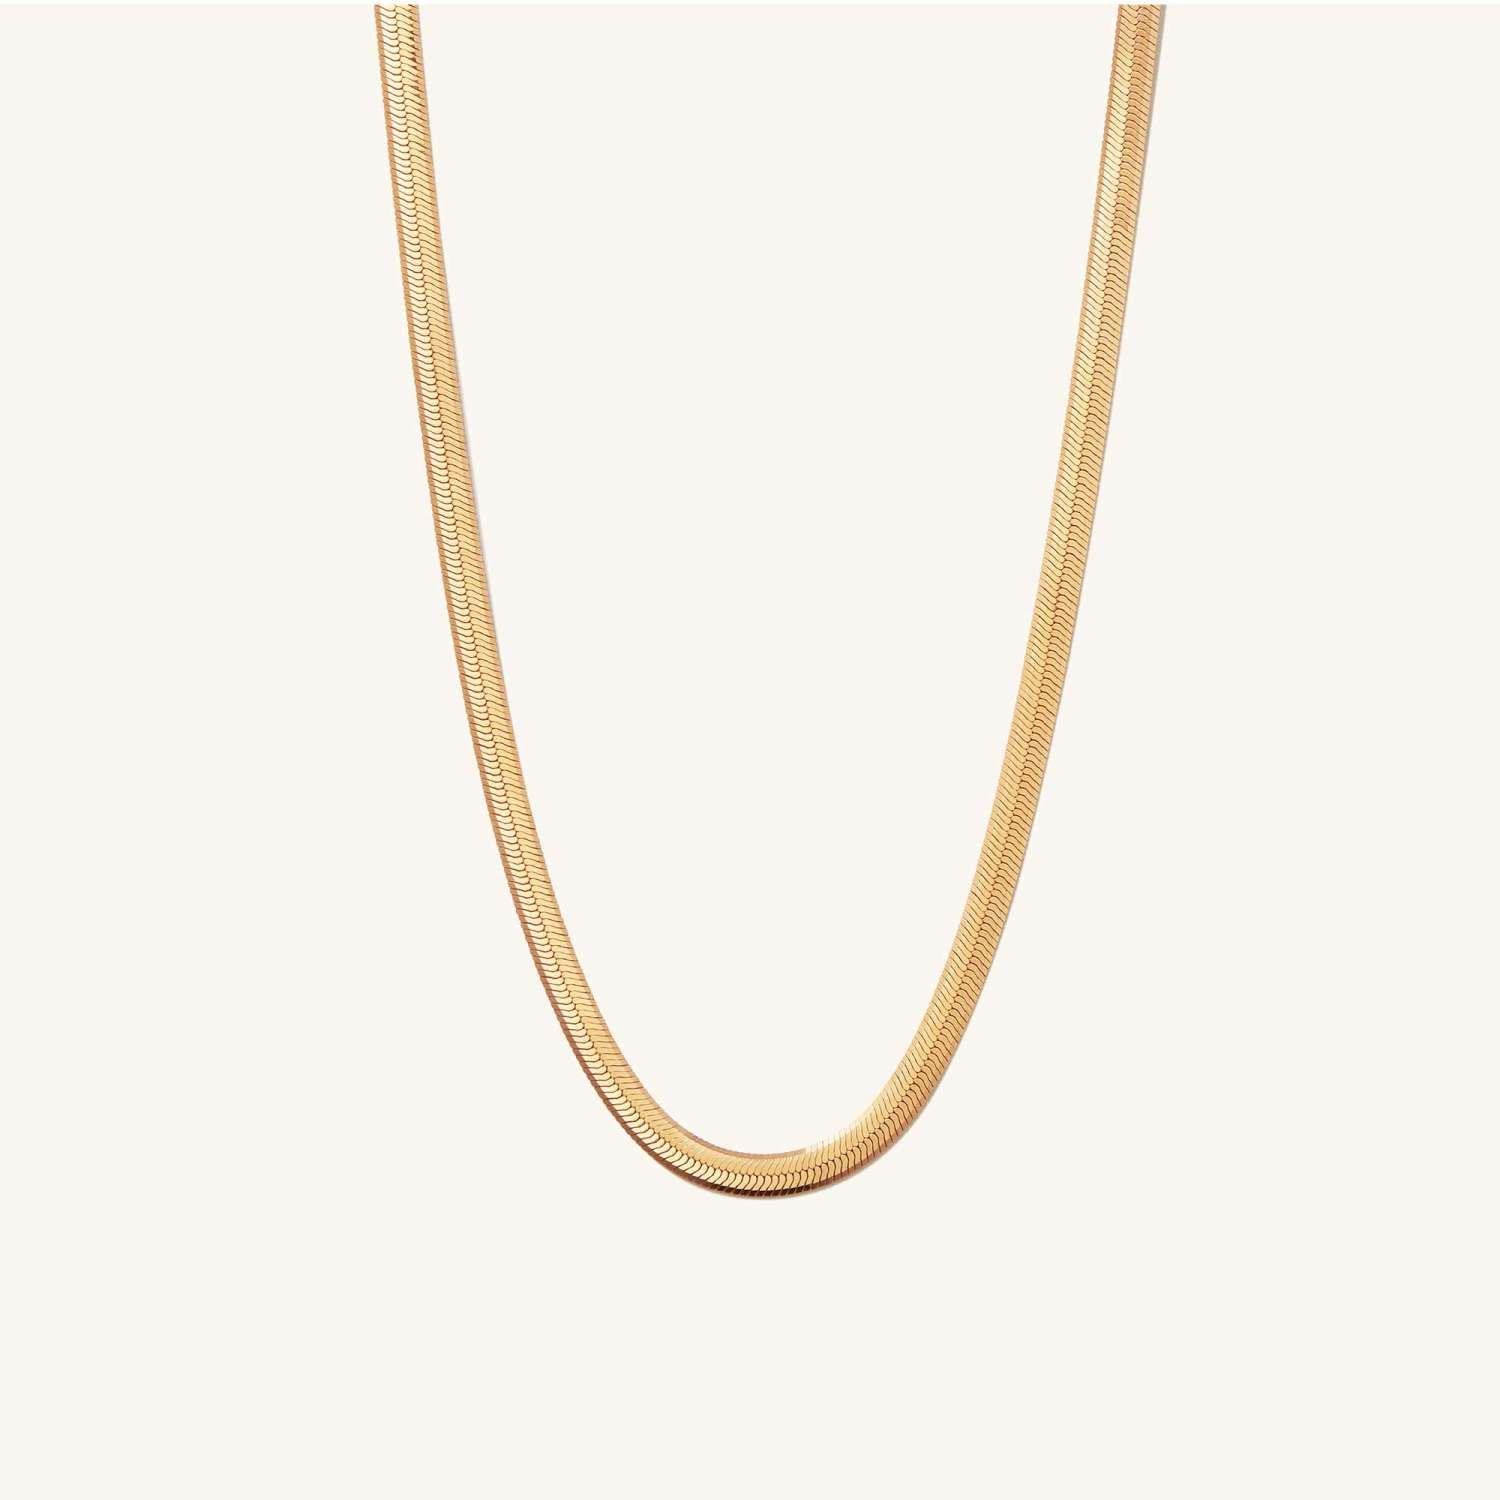 Bold Herringbone Chain Necklace - A$300 | Mejuri (Global)